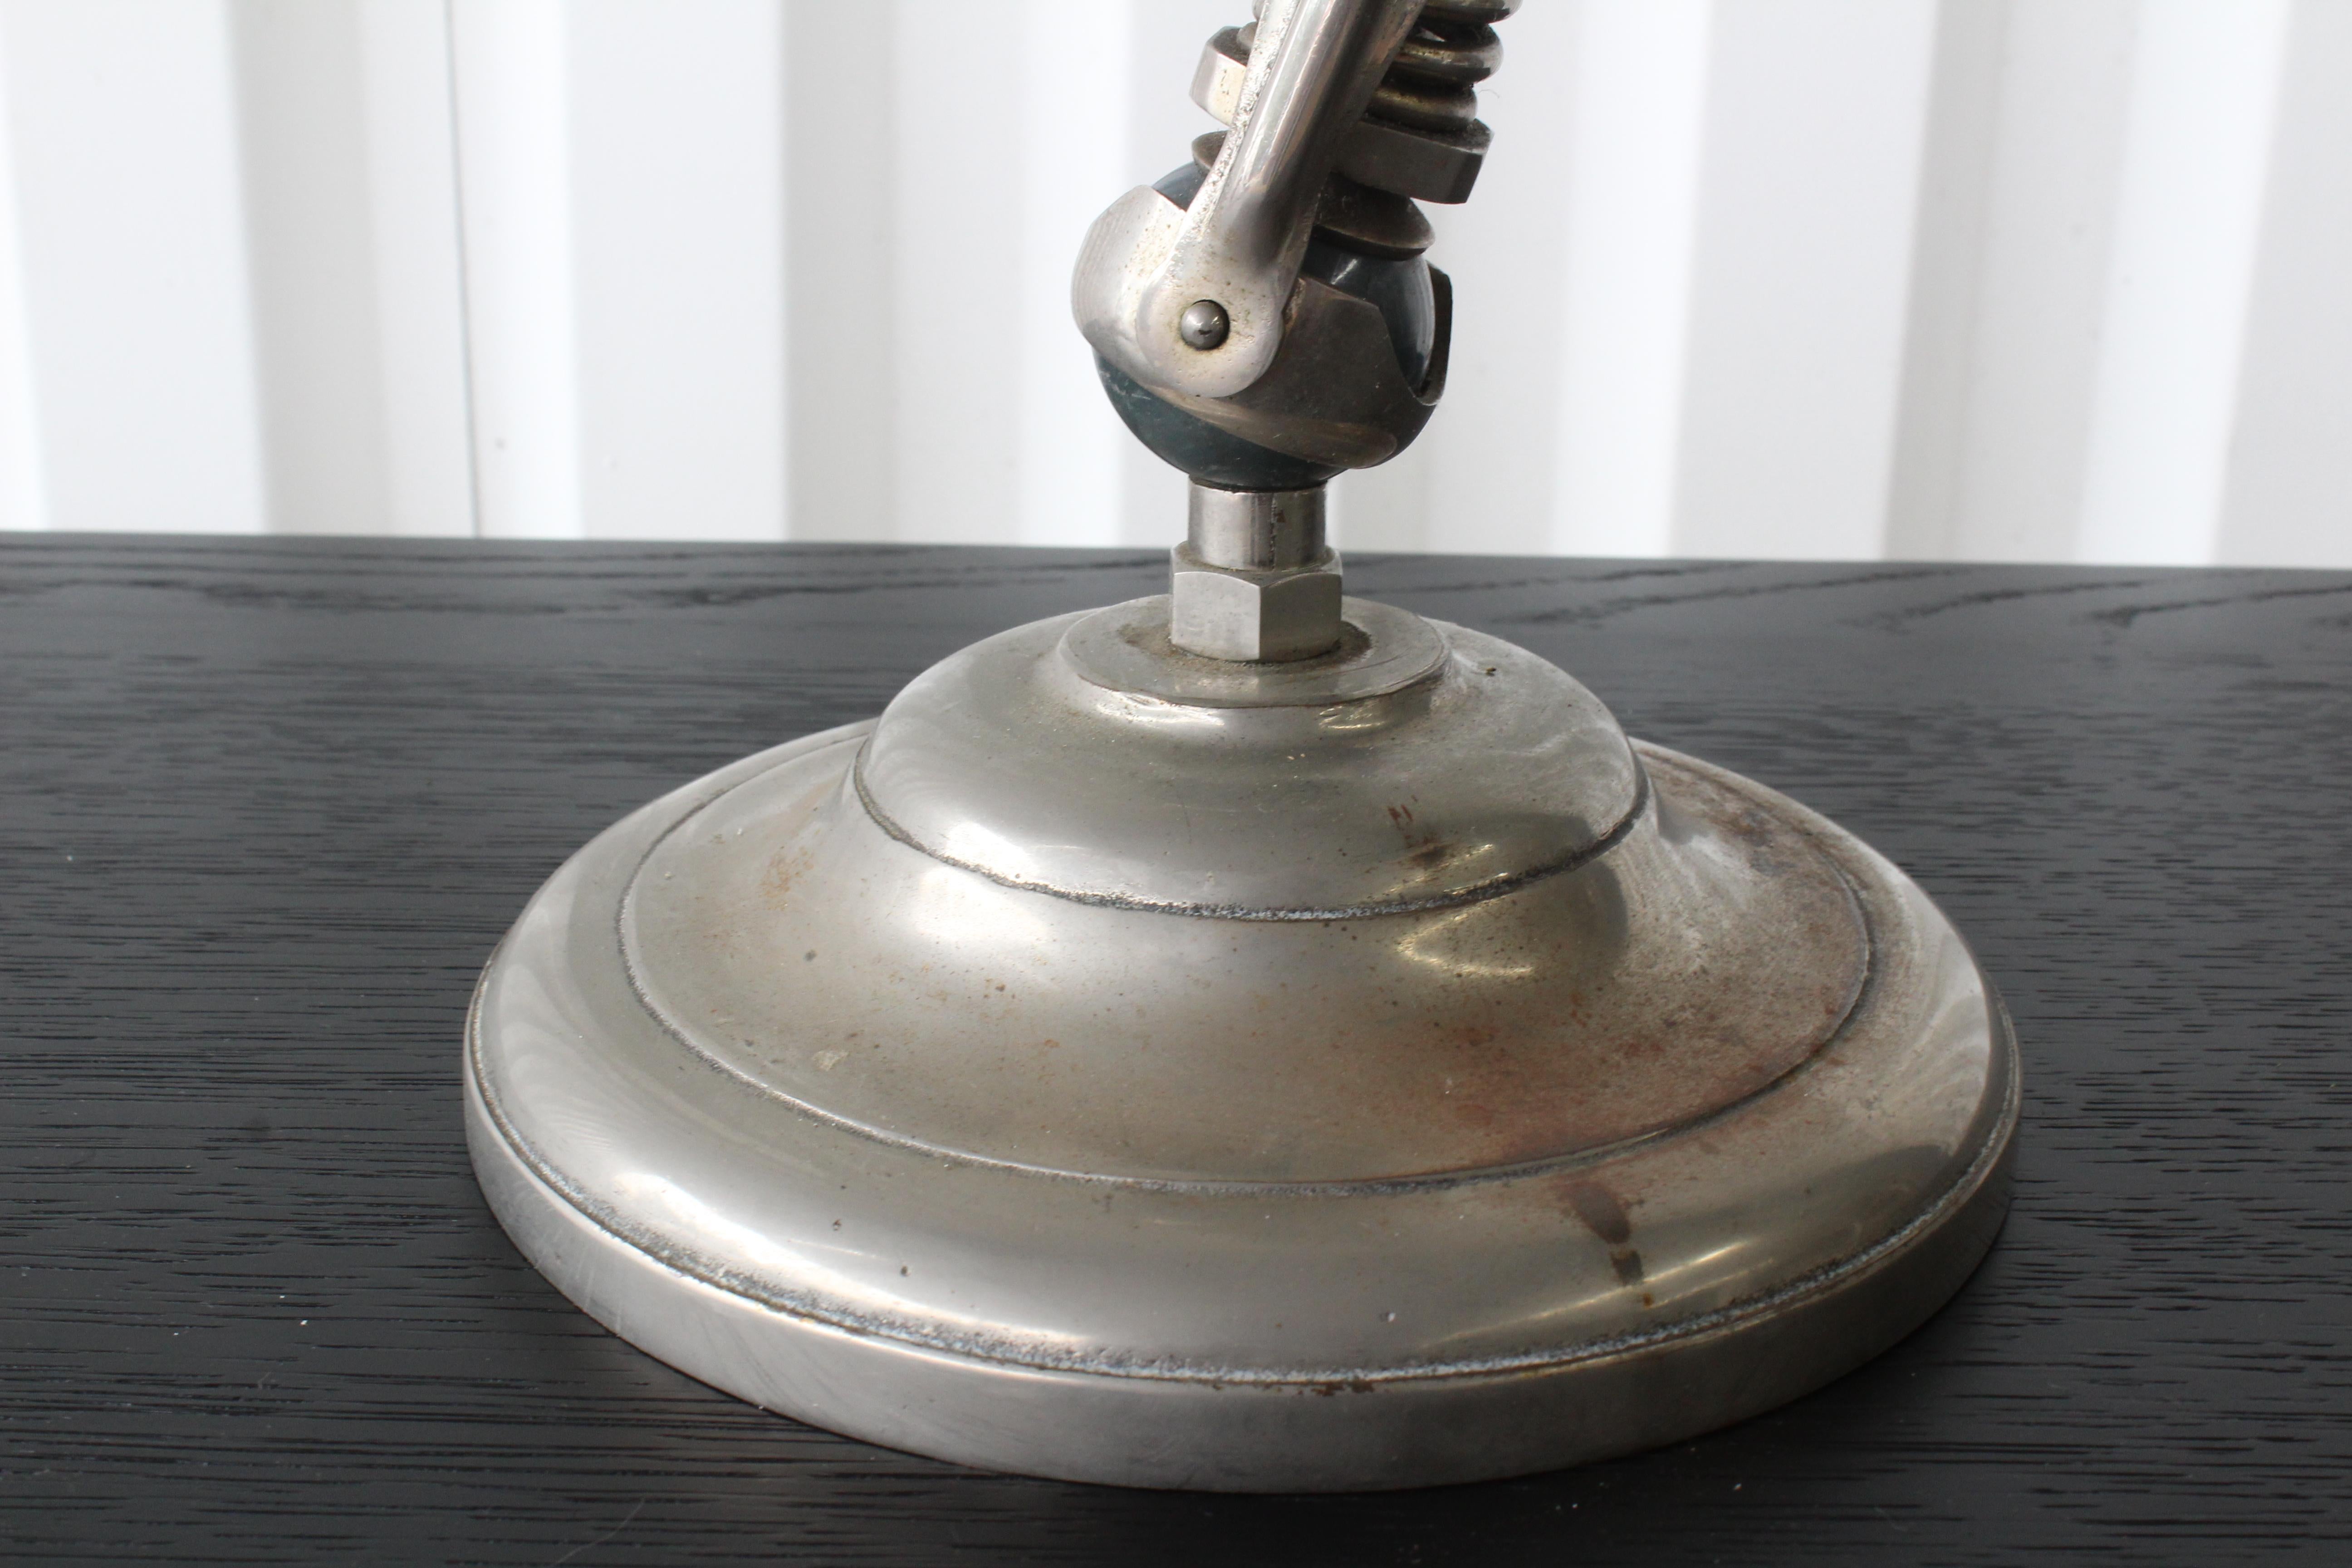 vintage industrial table lamp